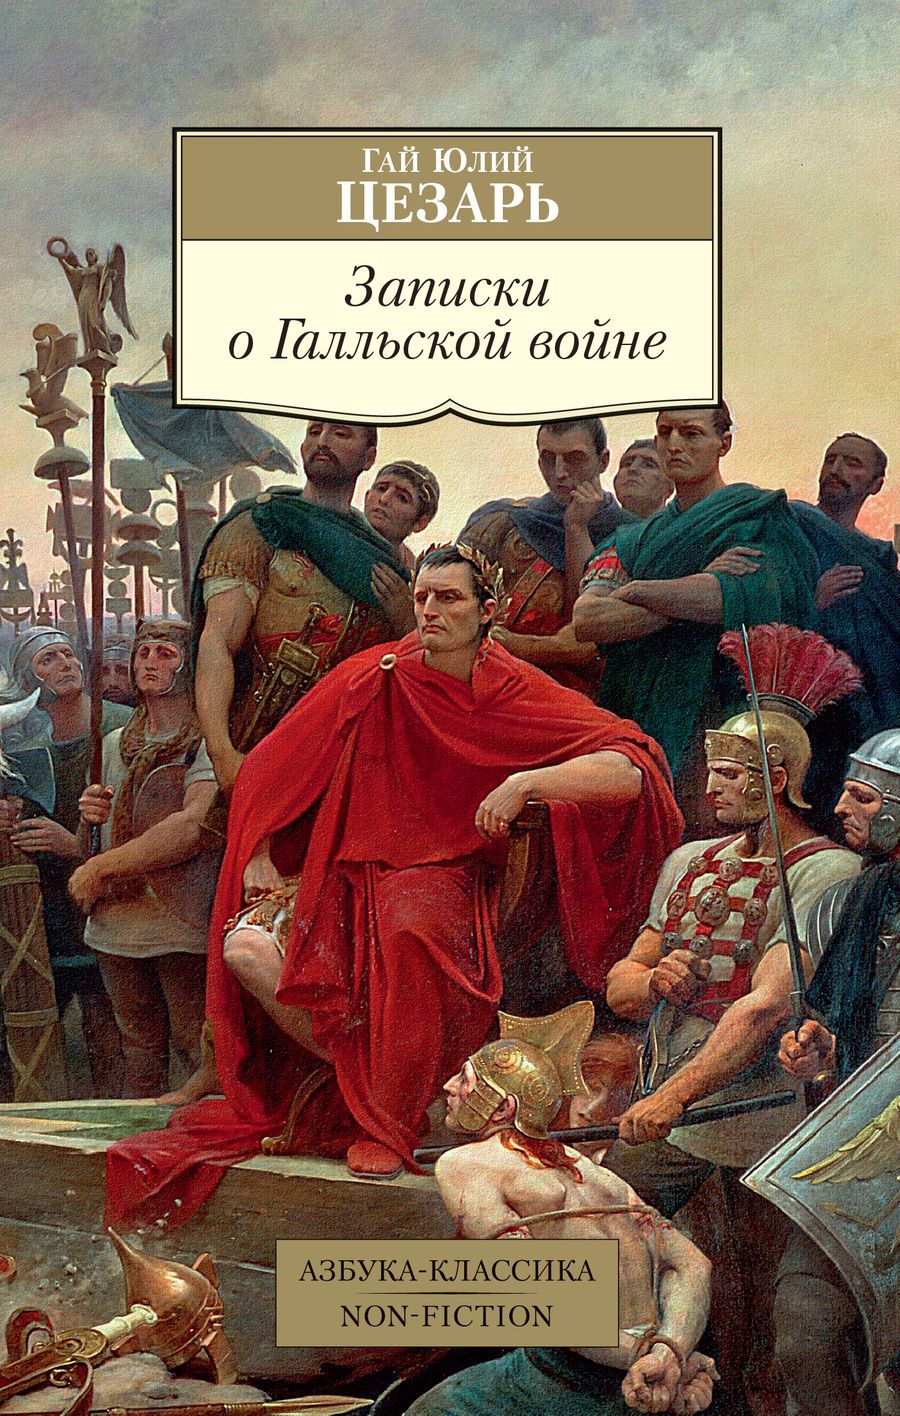 Обложка книги "Цезарь: Записки о Галльской войне"